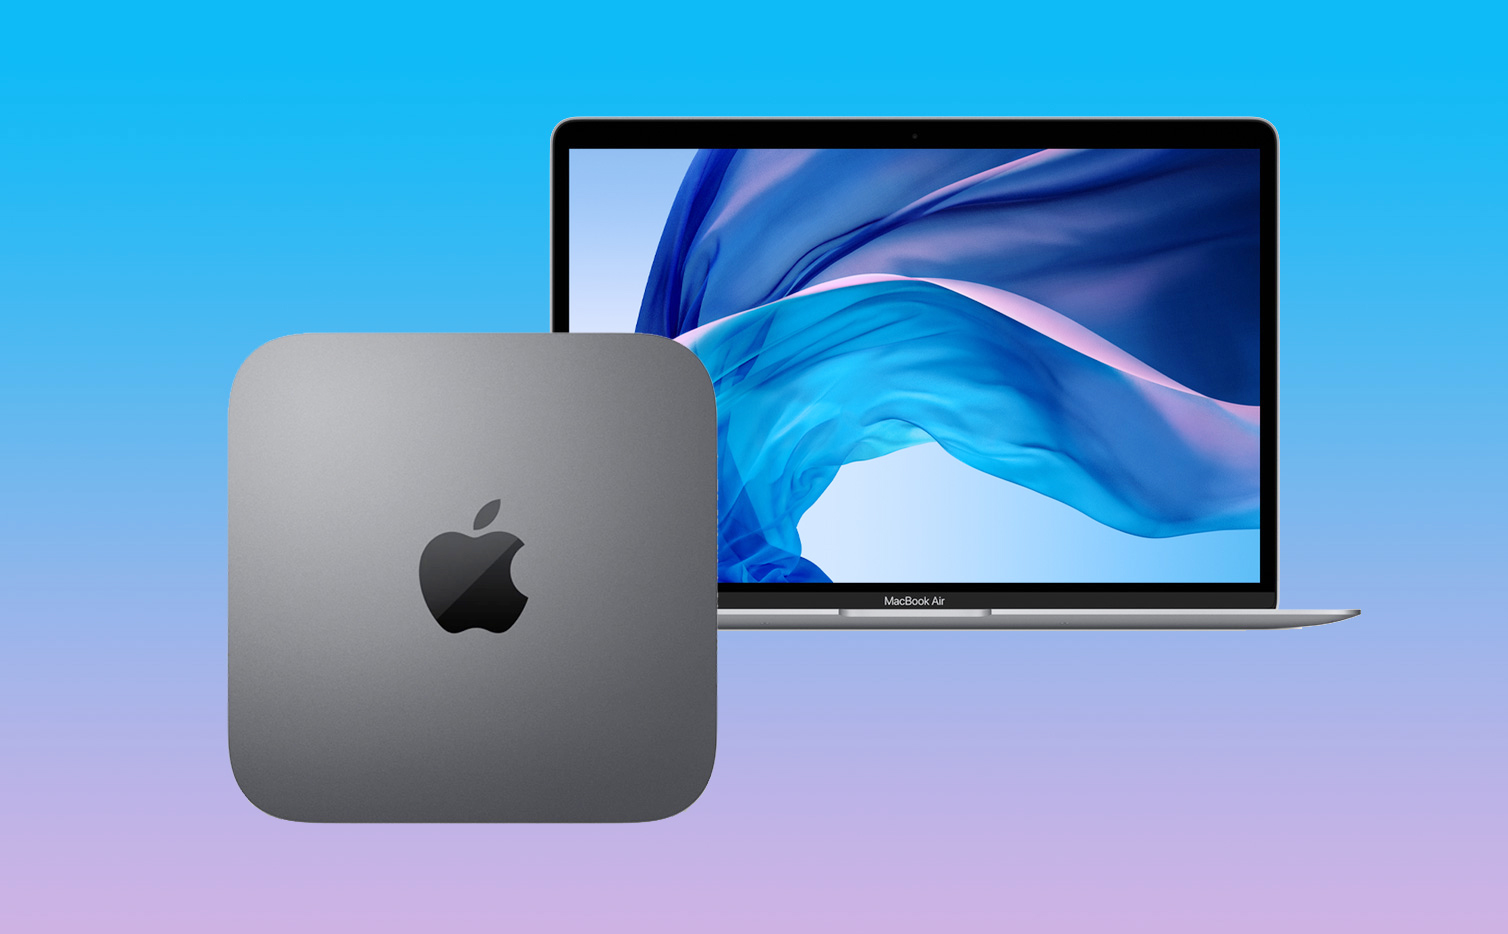 MacBook Air có khả năng di động cao còn Mac Mini thì không thể